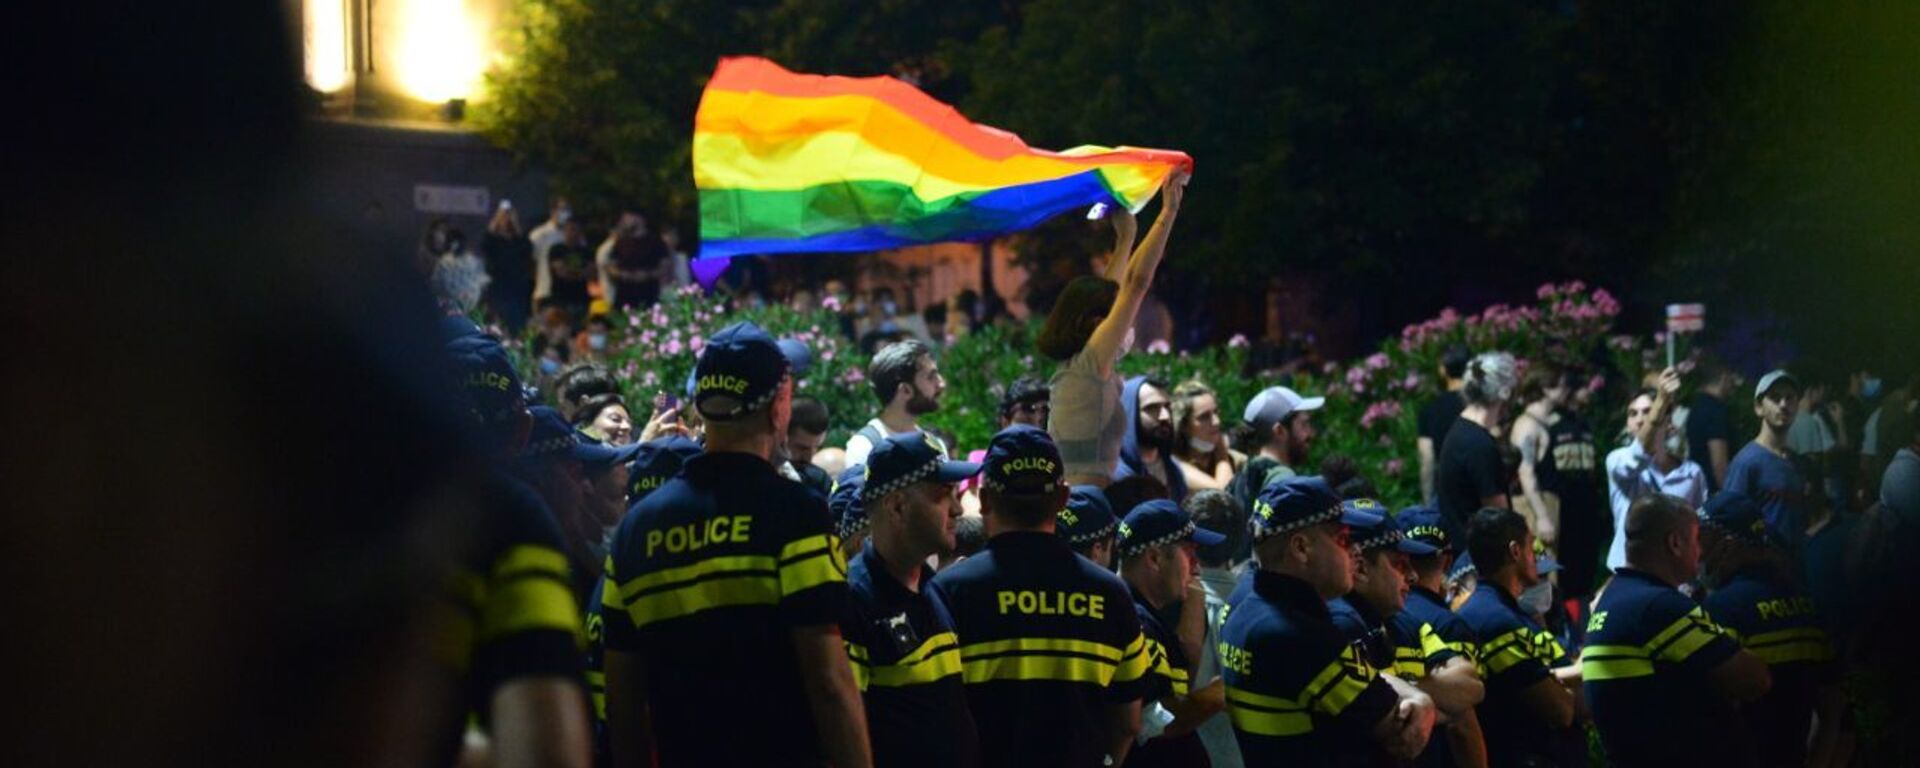 Противостояние у парламента Грузии 6 июля 2021 года. Один из участников акции молчания держит флаг ЛГБТ - Sputnik Грузия, 1920, 06.07.2021